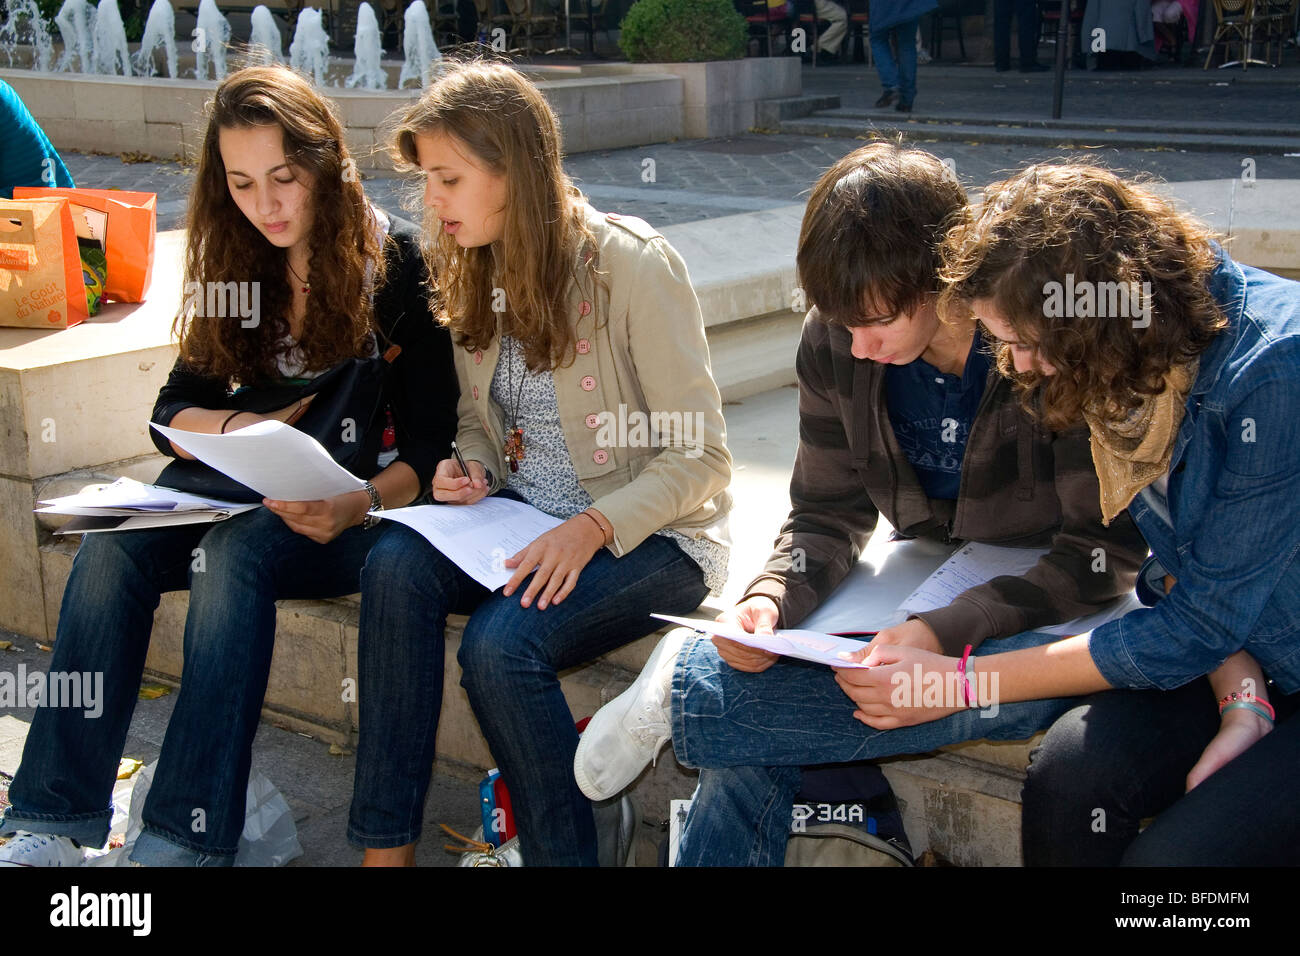 Los estudiantes estudian cerca de la Sorbona, en París, Francia. Foto de stock